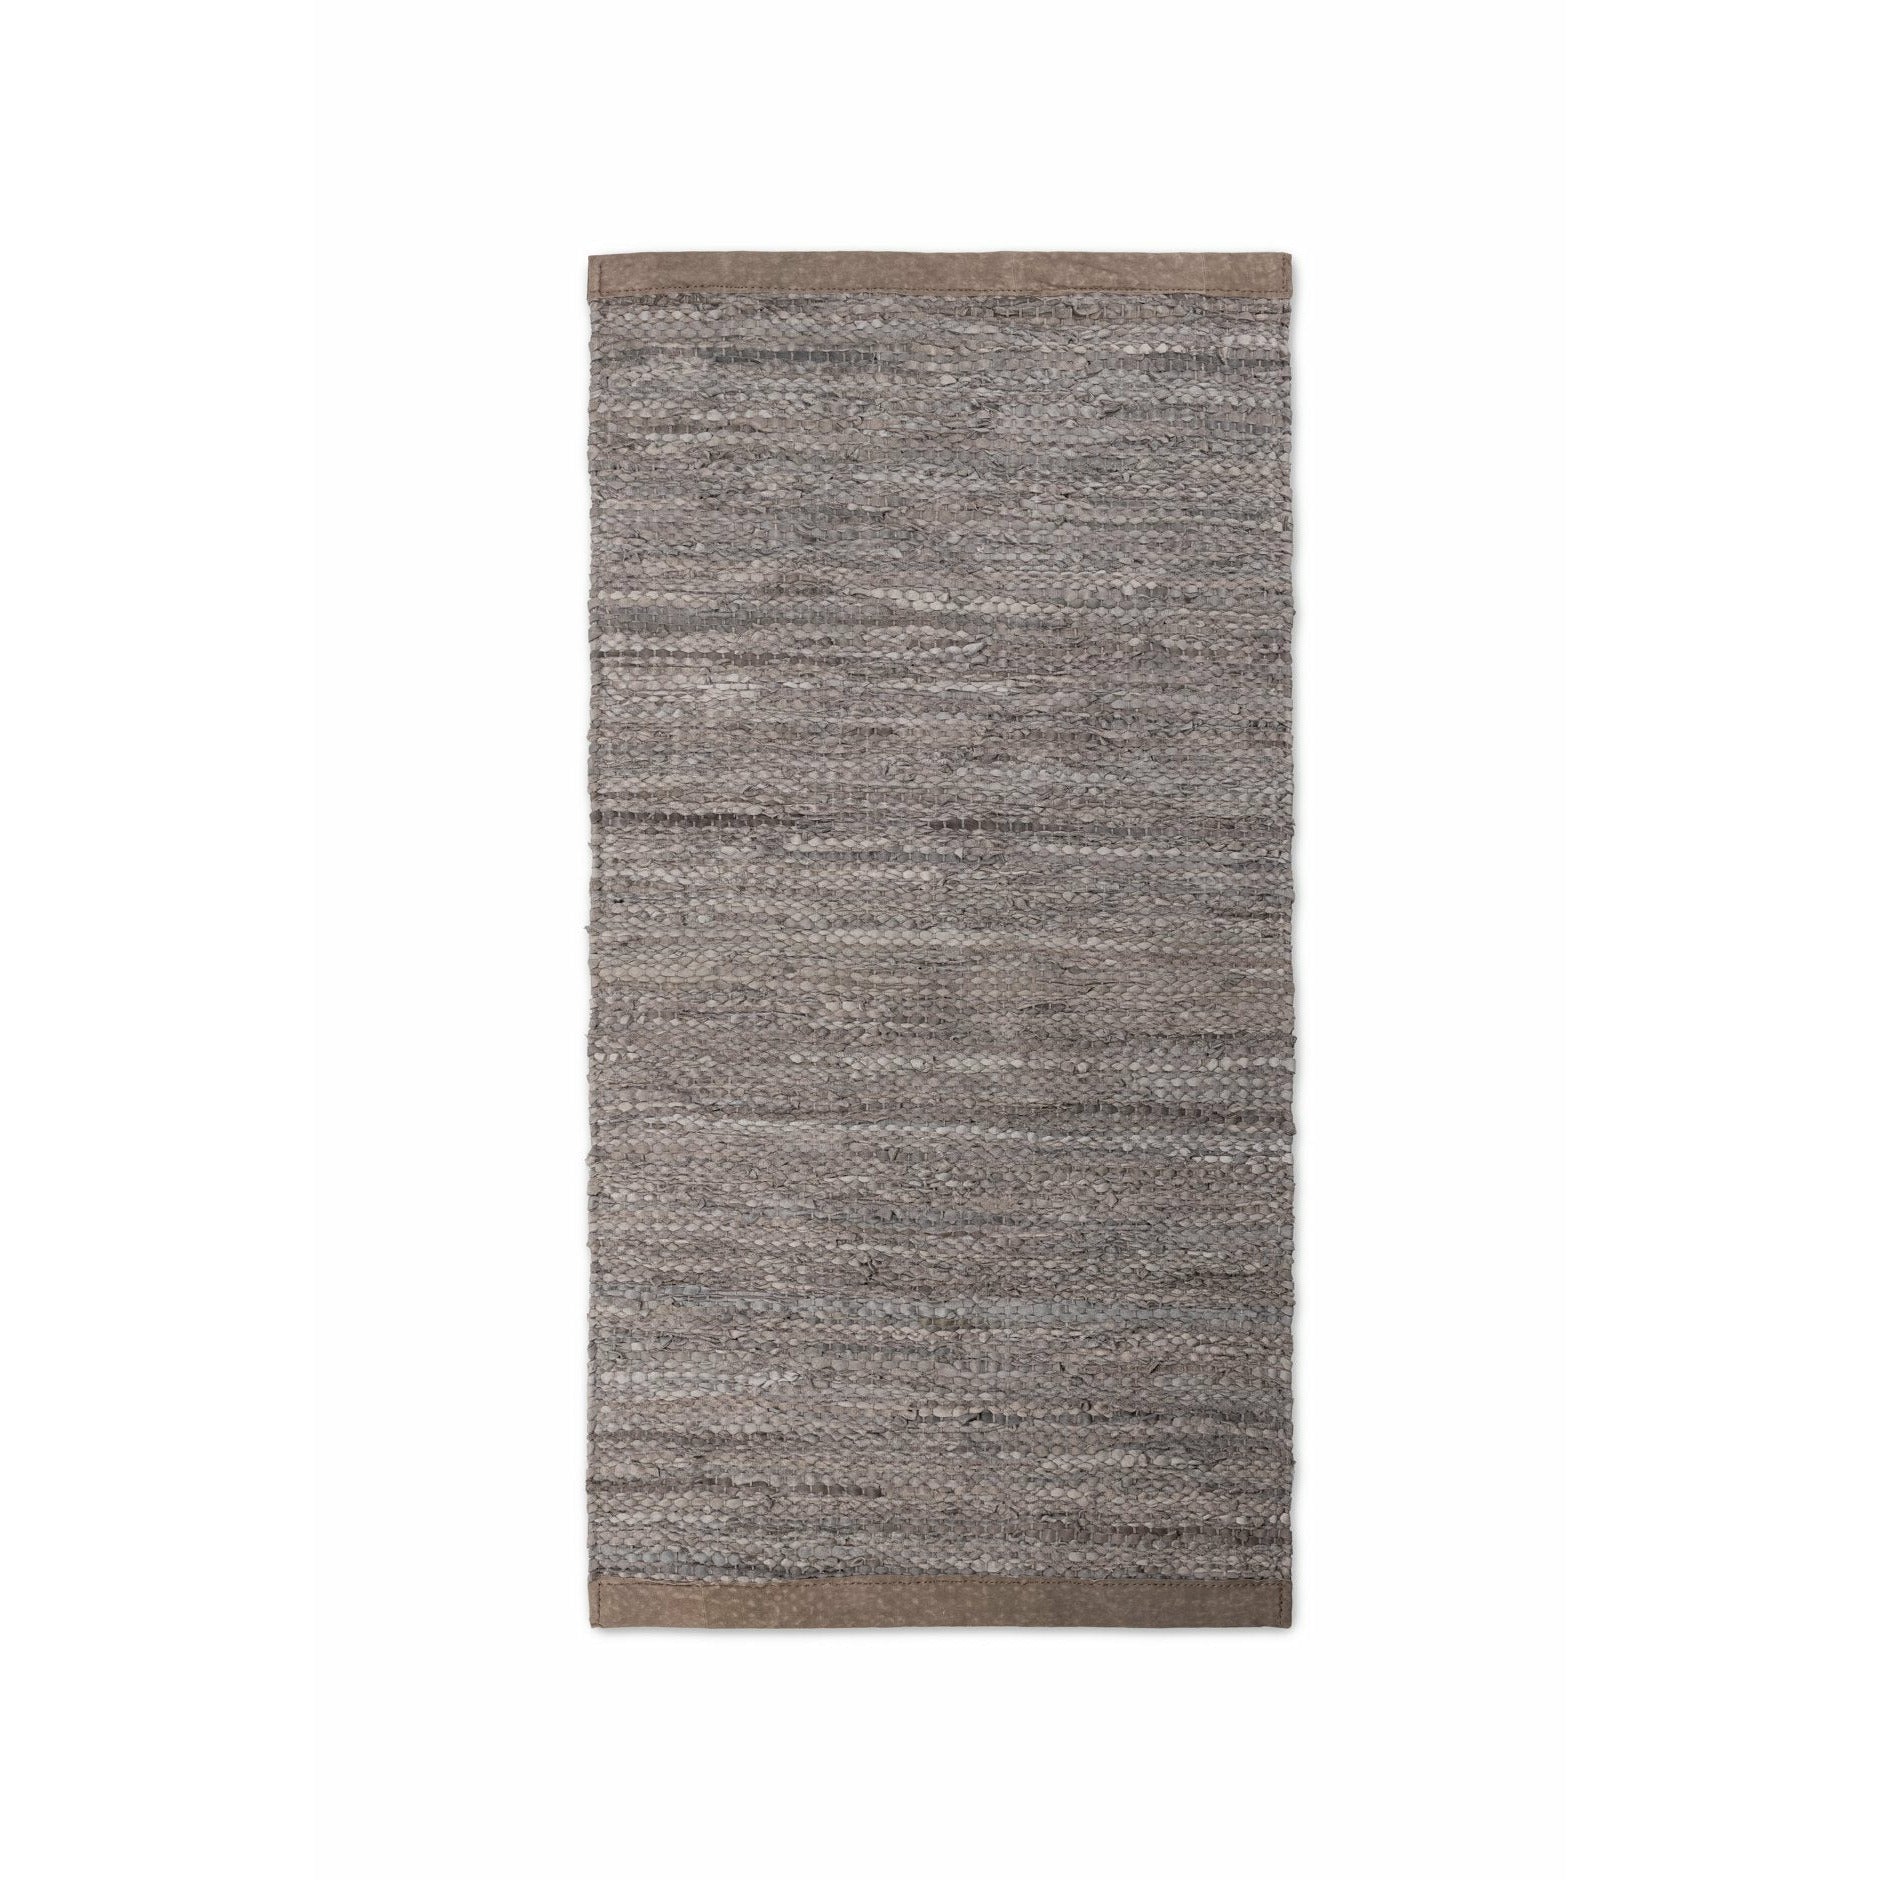 Rug Solid Leder Teppich Holz, 60 X 90 Cm